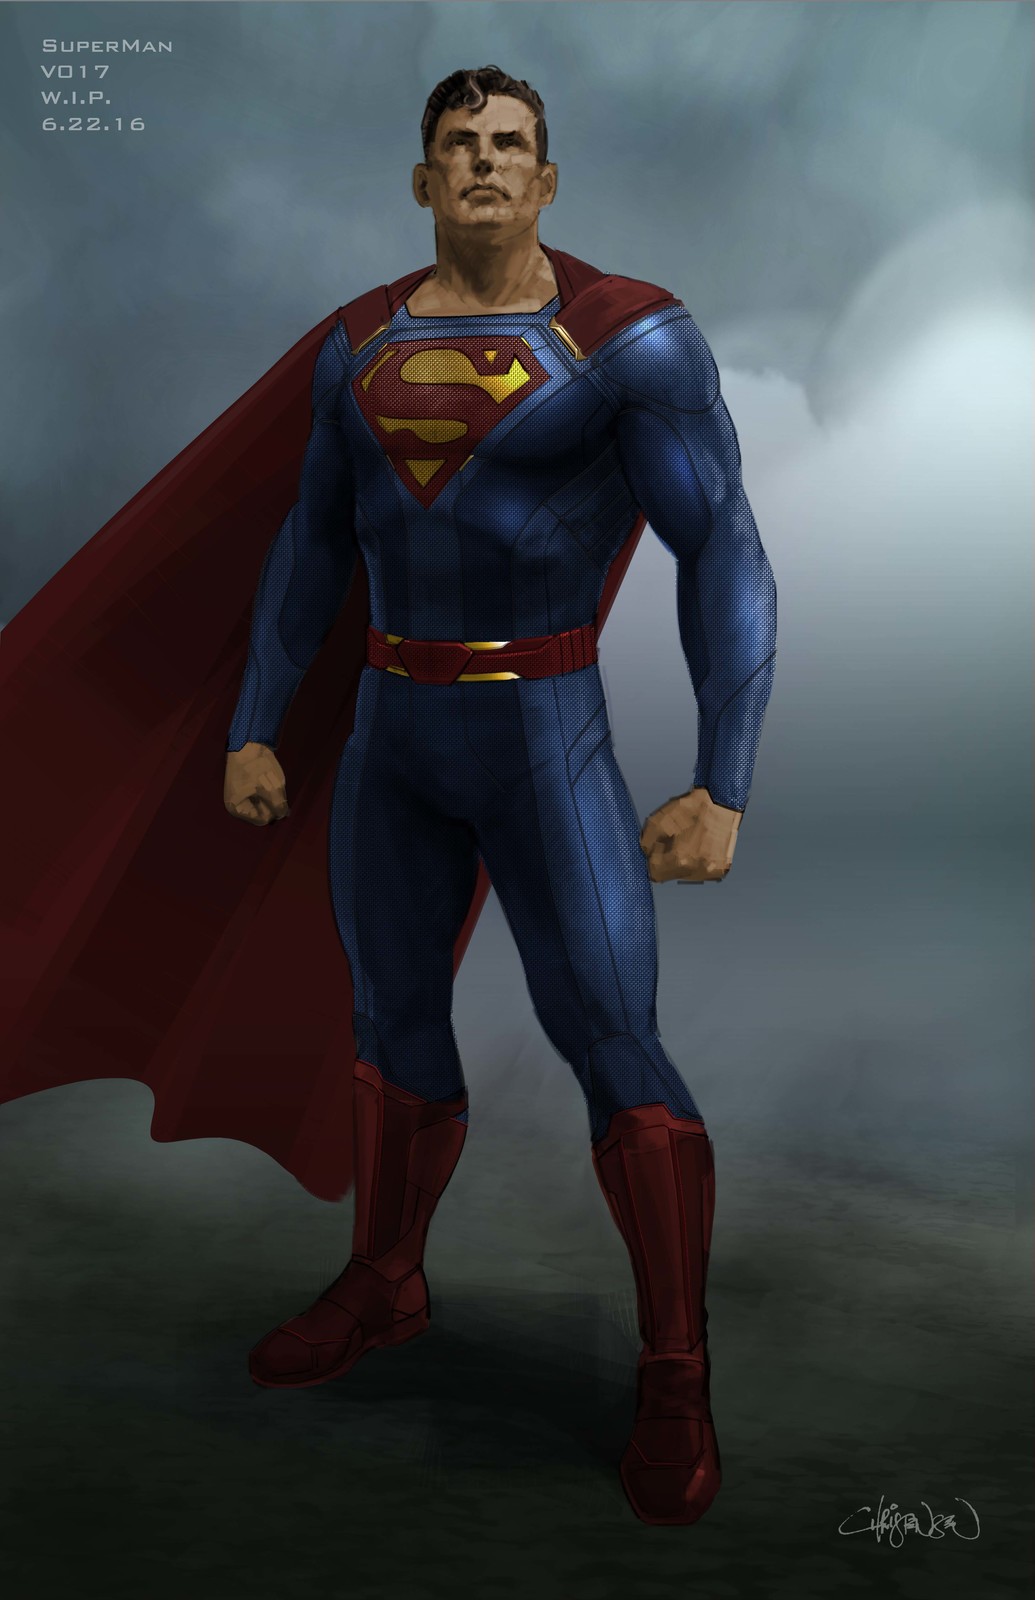 keith-christensen-supergirl-superman-v017.jpg